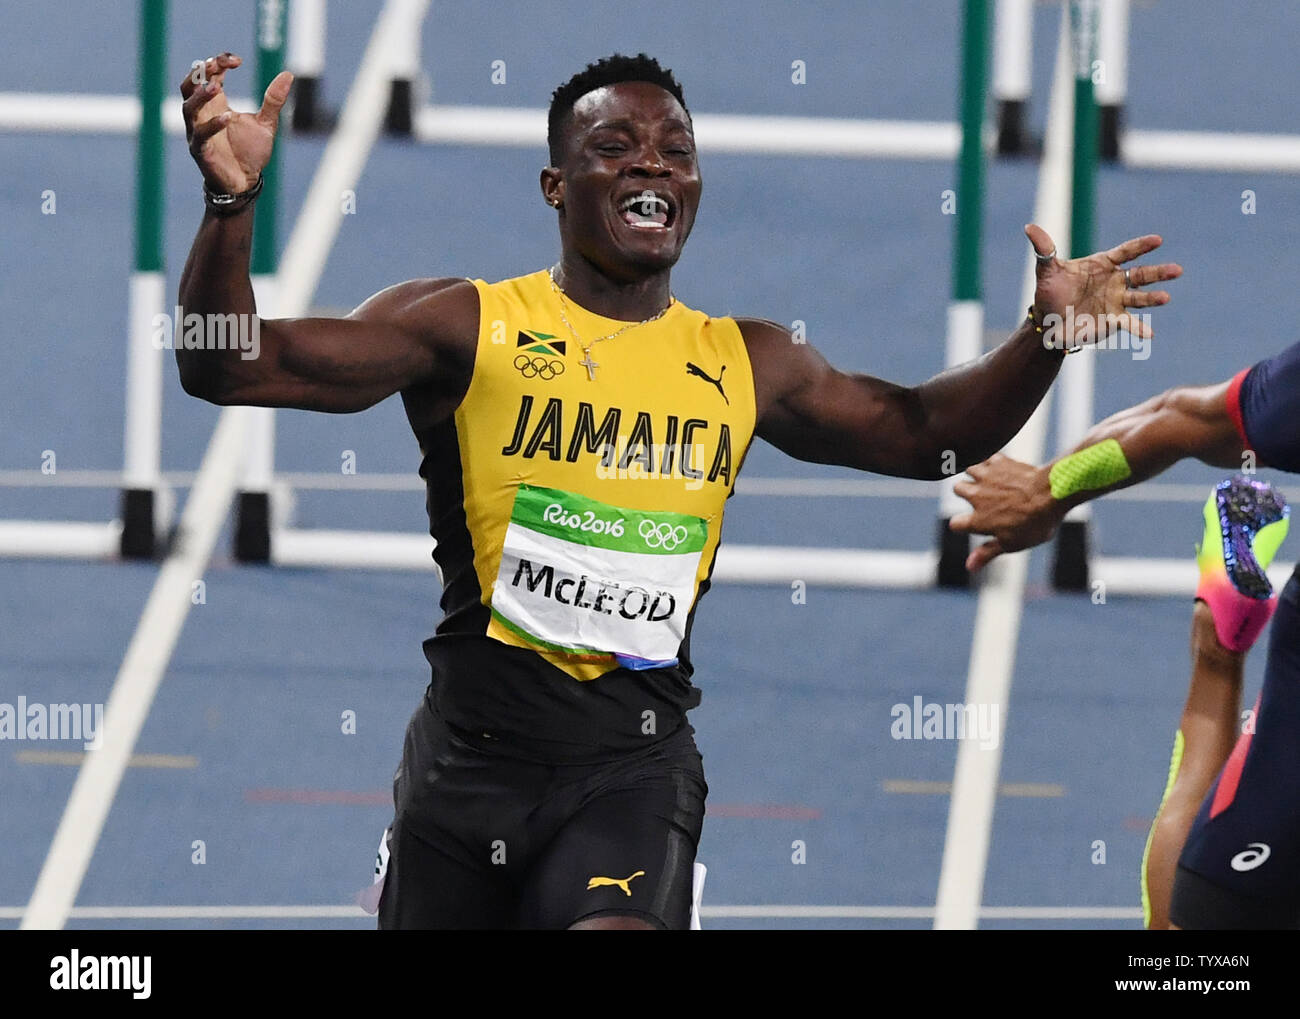 Omar Mcleod della Giamaica celebra dopo vince la medaglia d'oro in Uomini 110m Hurdles Finale allo Stadio Olimpico presso il Rio 2016 Olimpiadi di estate a Rio de Janeiro, Brasile, il 16 agosto 2016. Foto di Richard Ellis/UPI Foto Stock